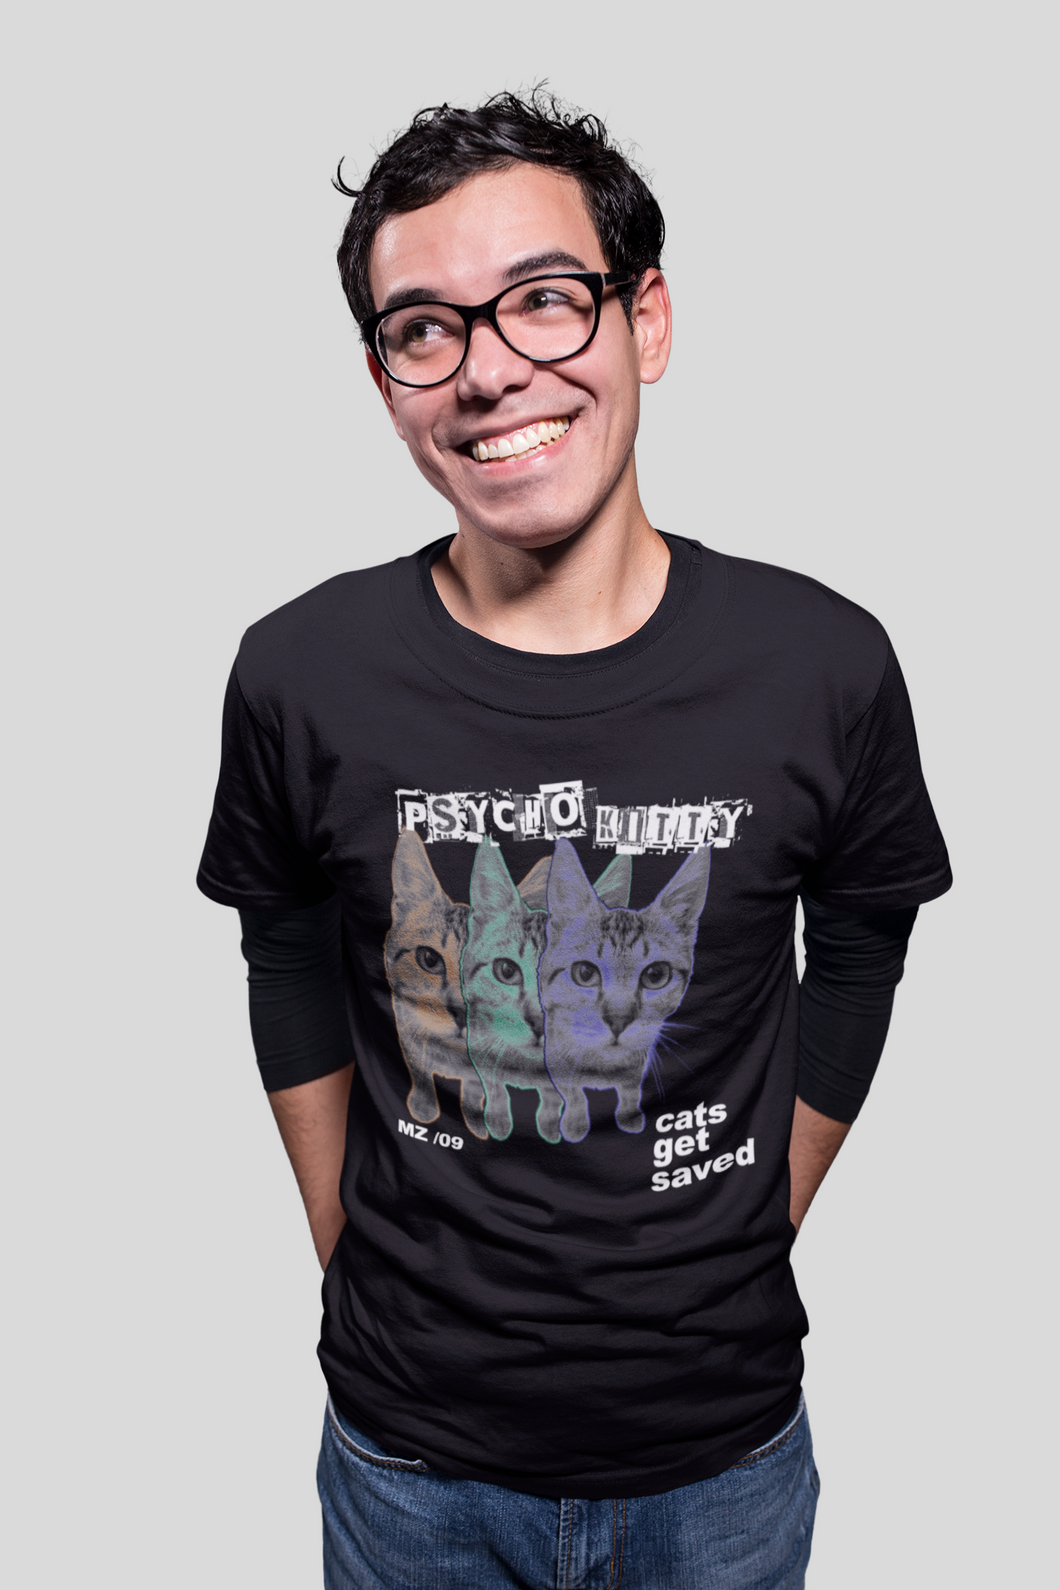 Psycho Kitty Men's/Unisex or Women's T-shirt